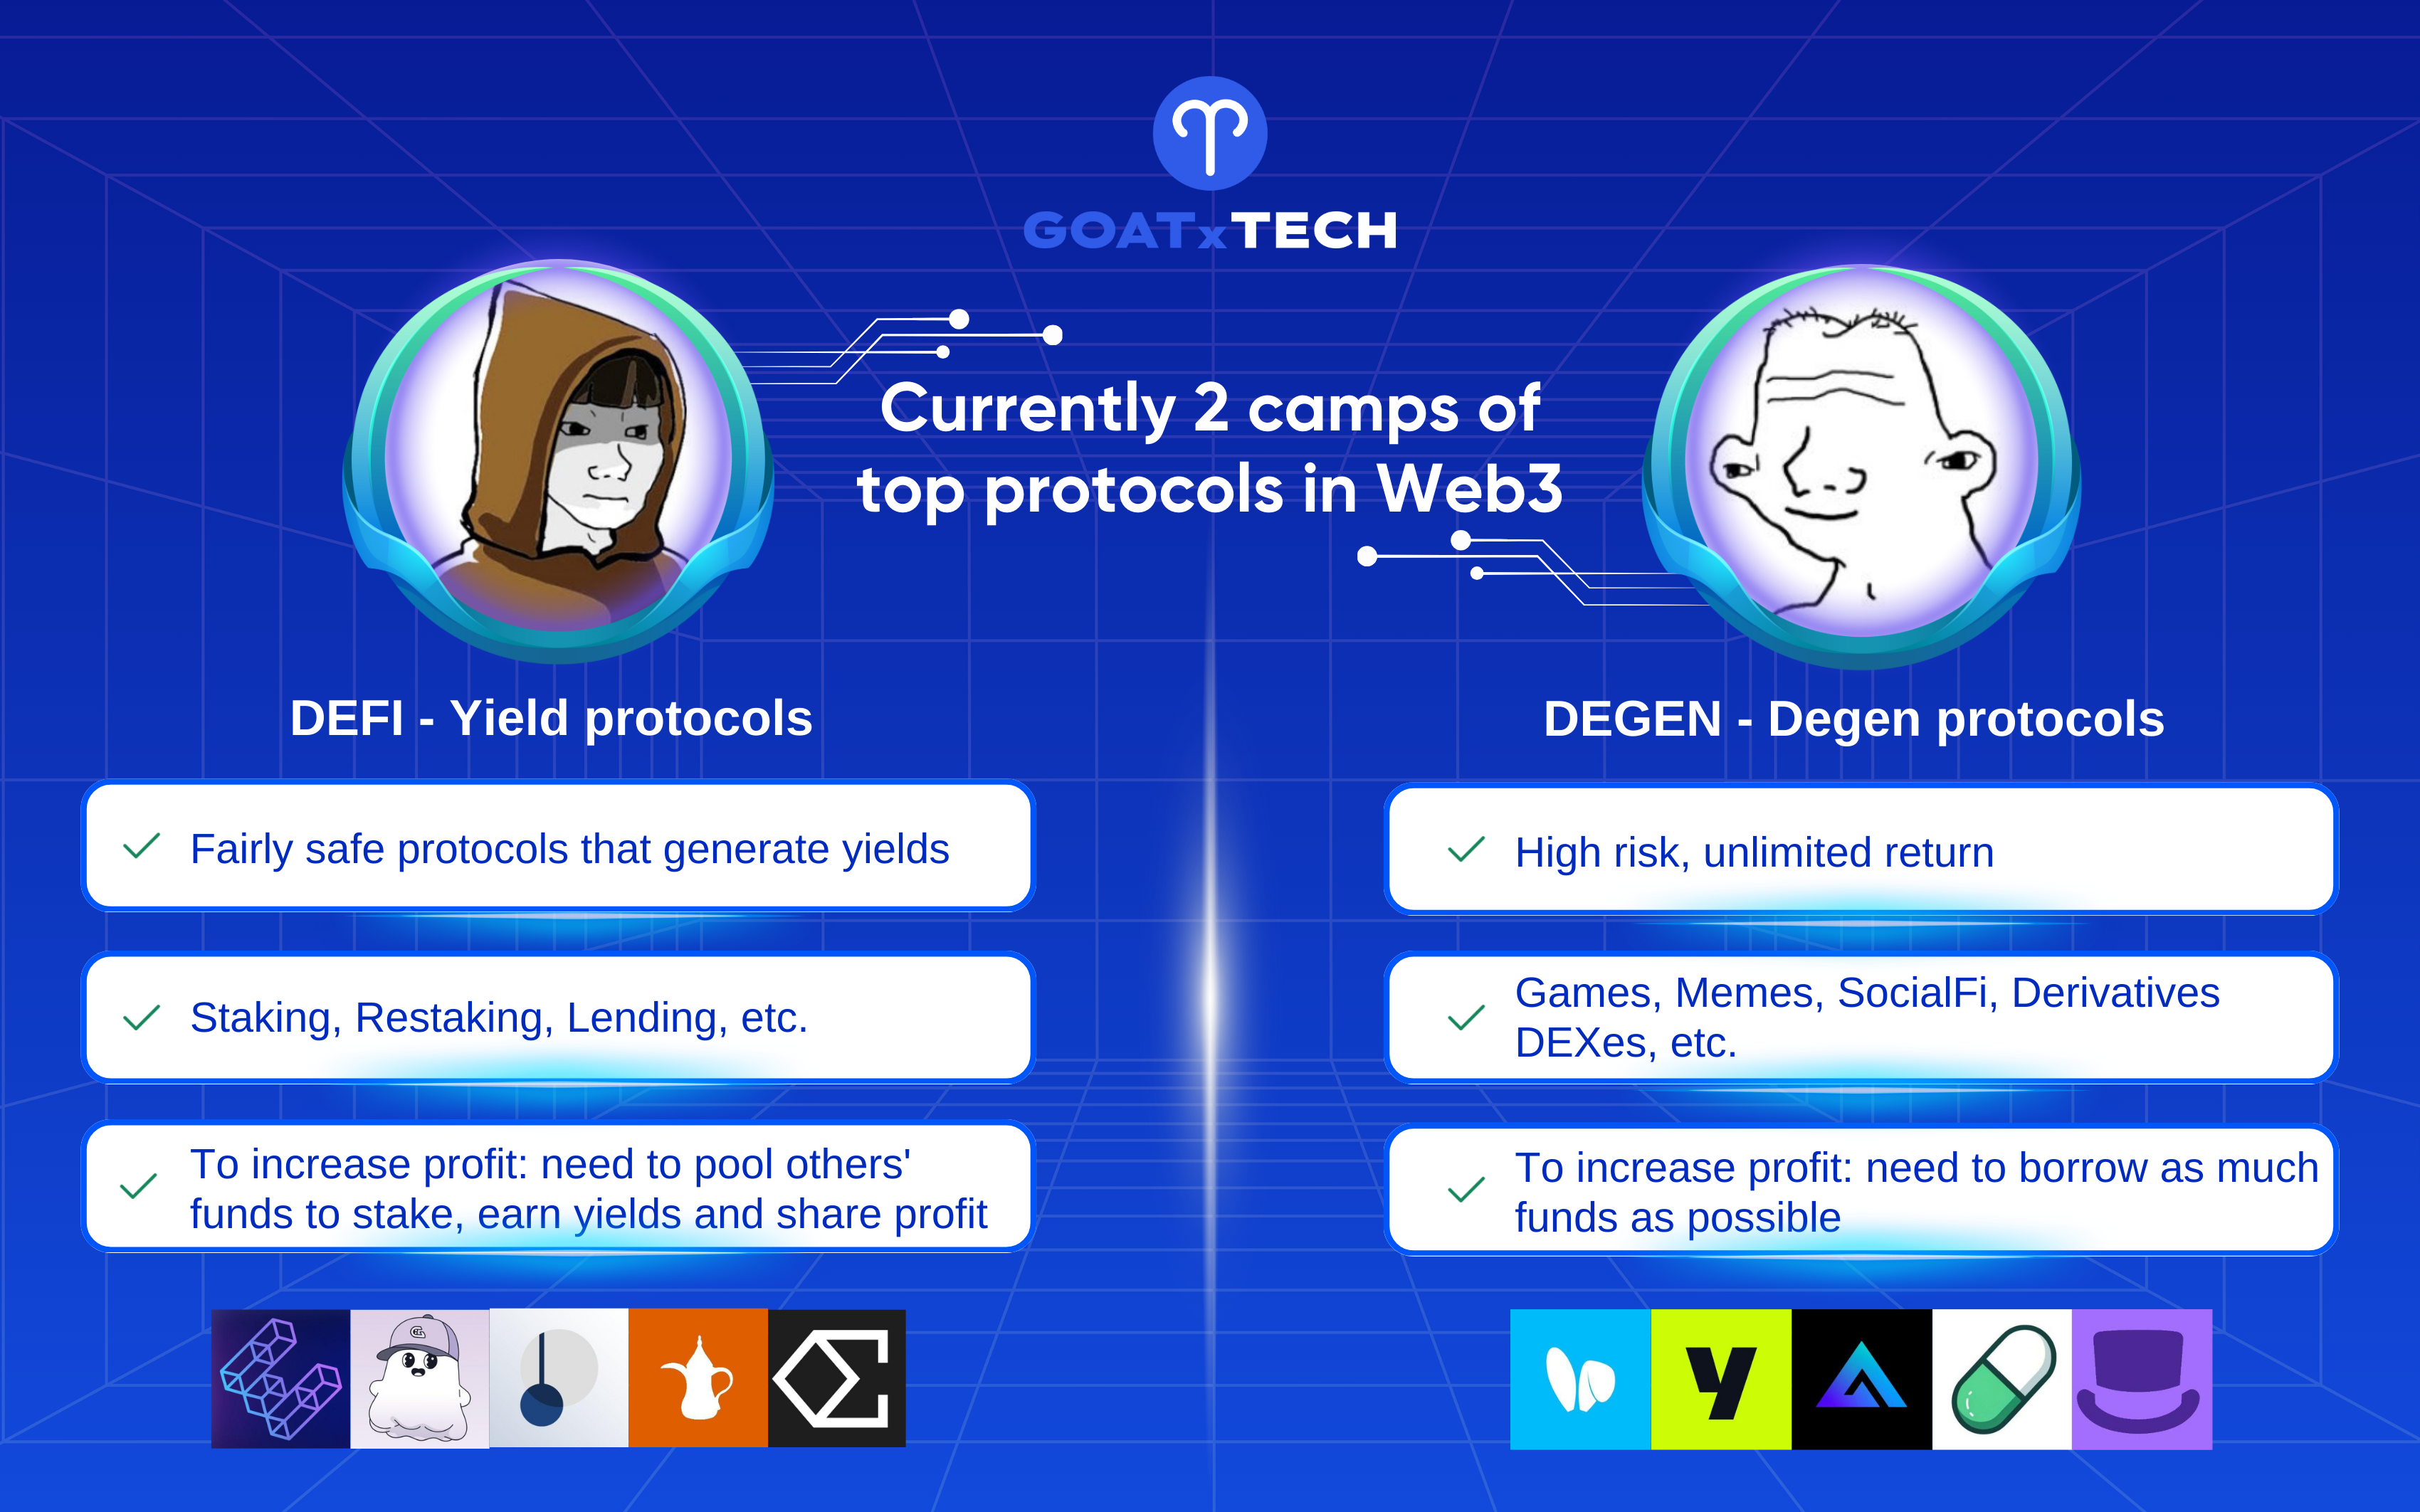 DeFi Protocols and Degen Protocols in Web3